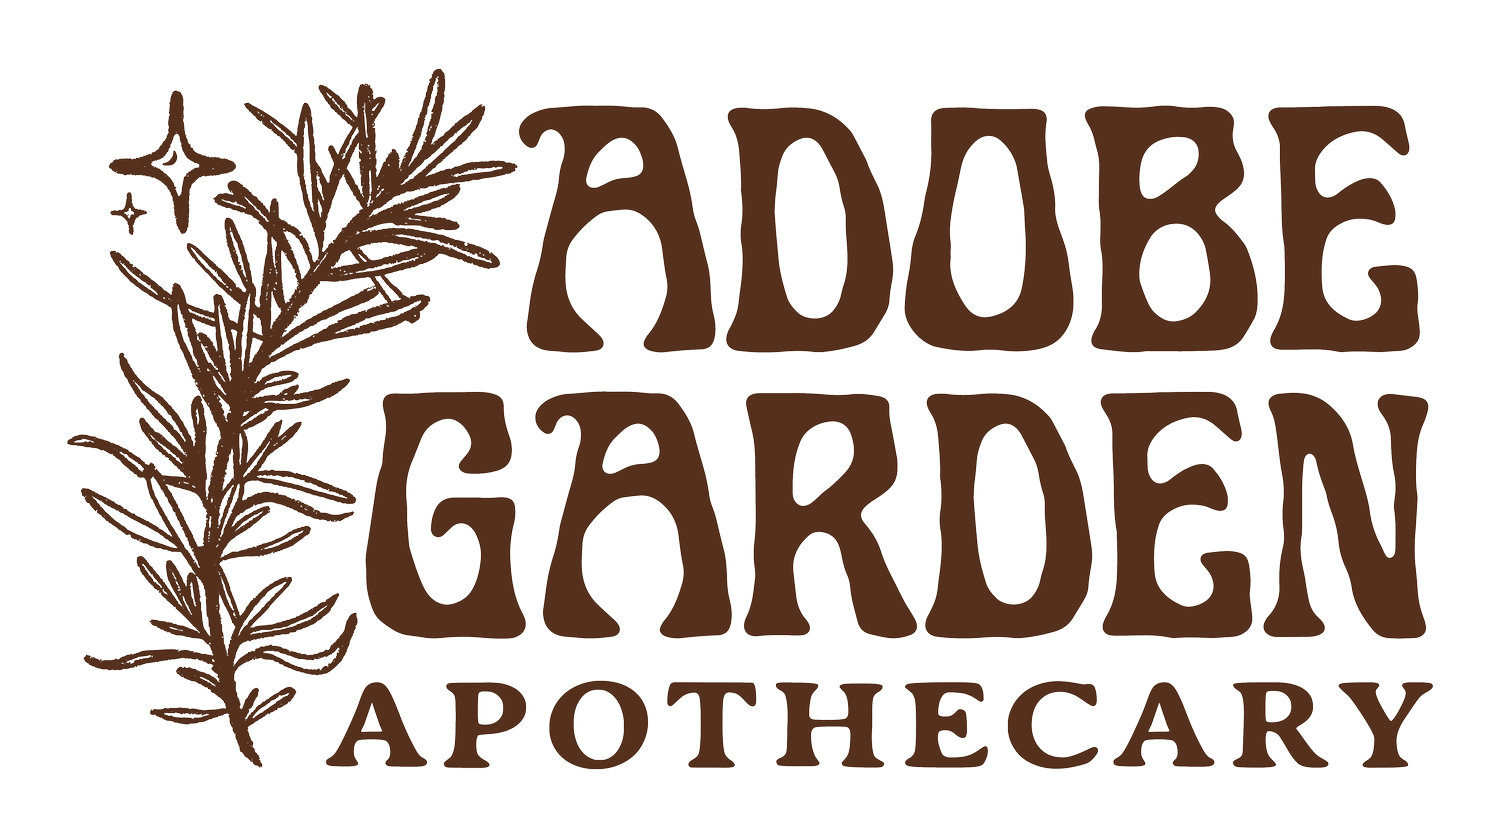 Adobe Garden Apothecary 